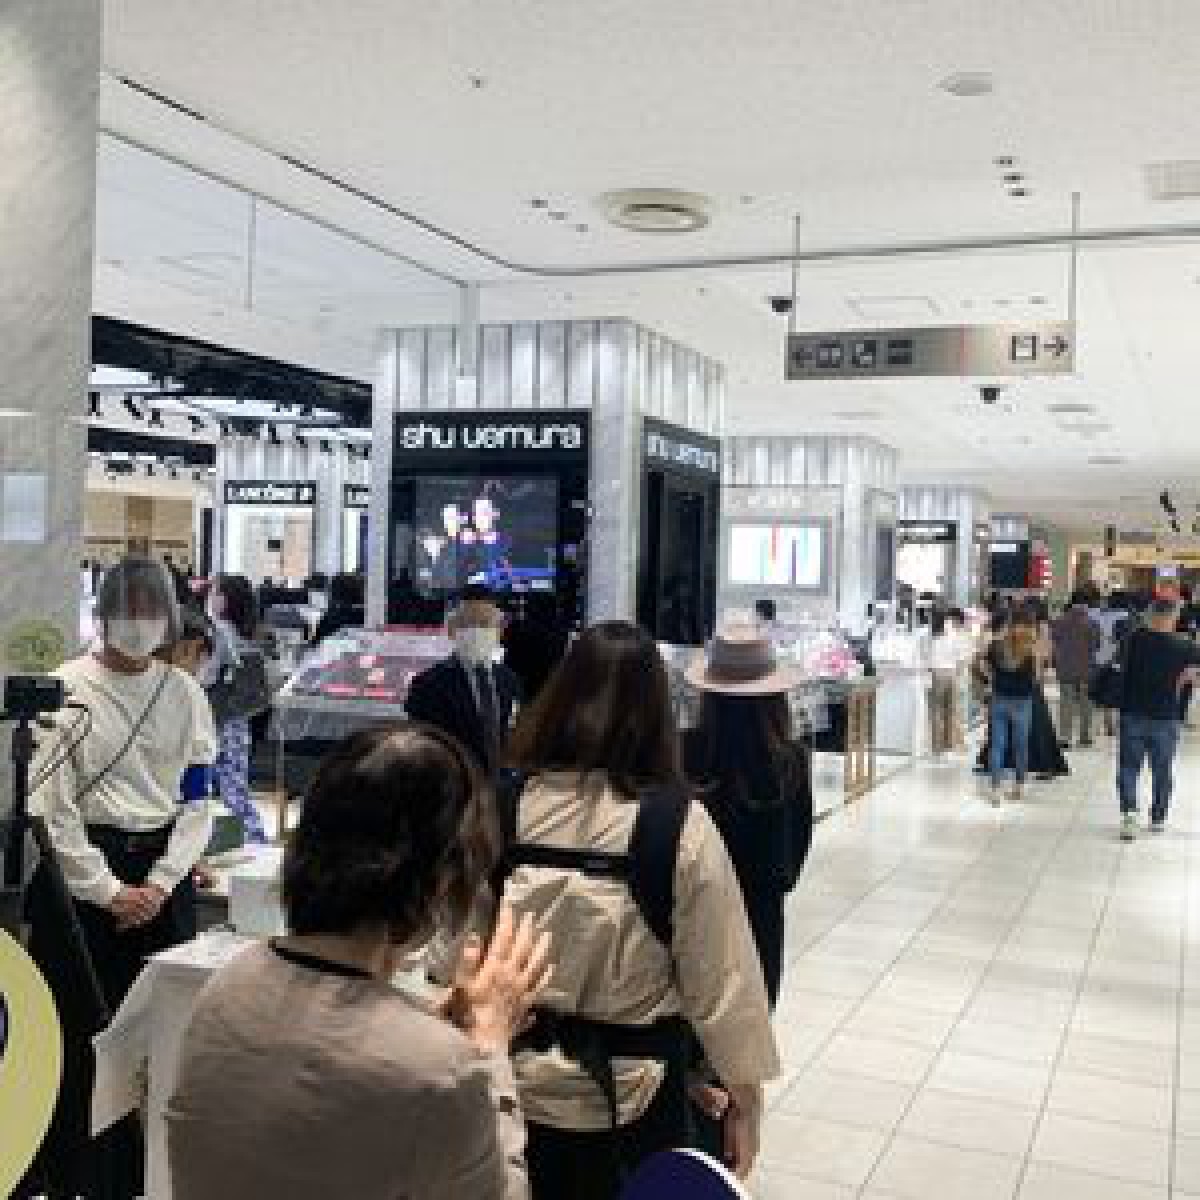 伊勢丹新宿店が約2ヶ月ぶりに営業再開、食品や化粧品売場賑わう